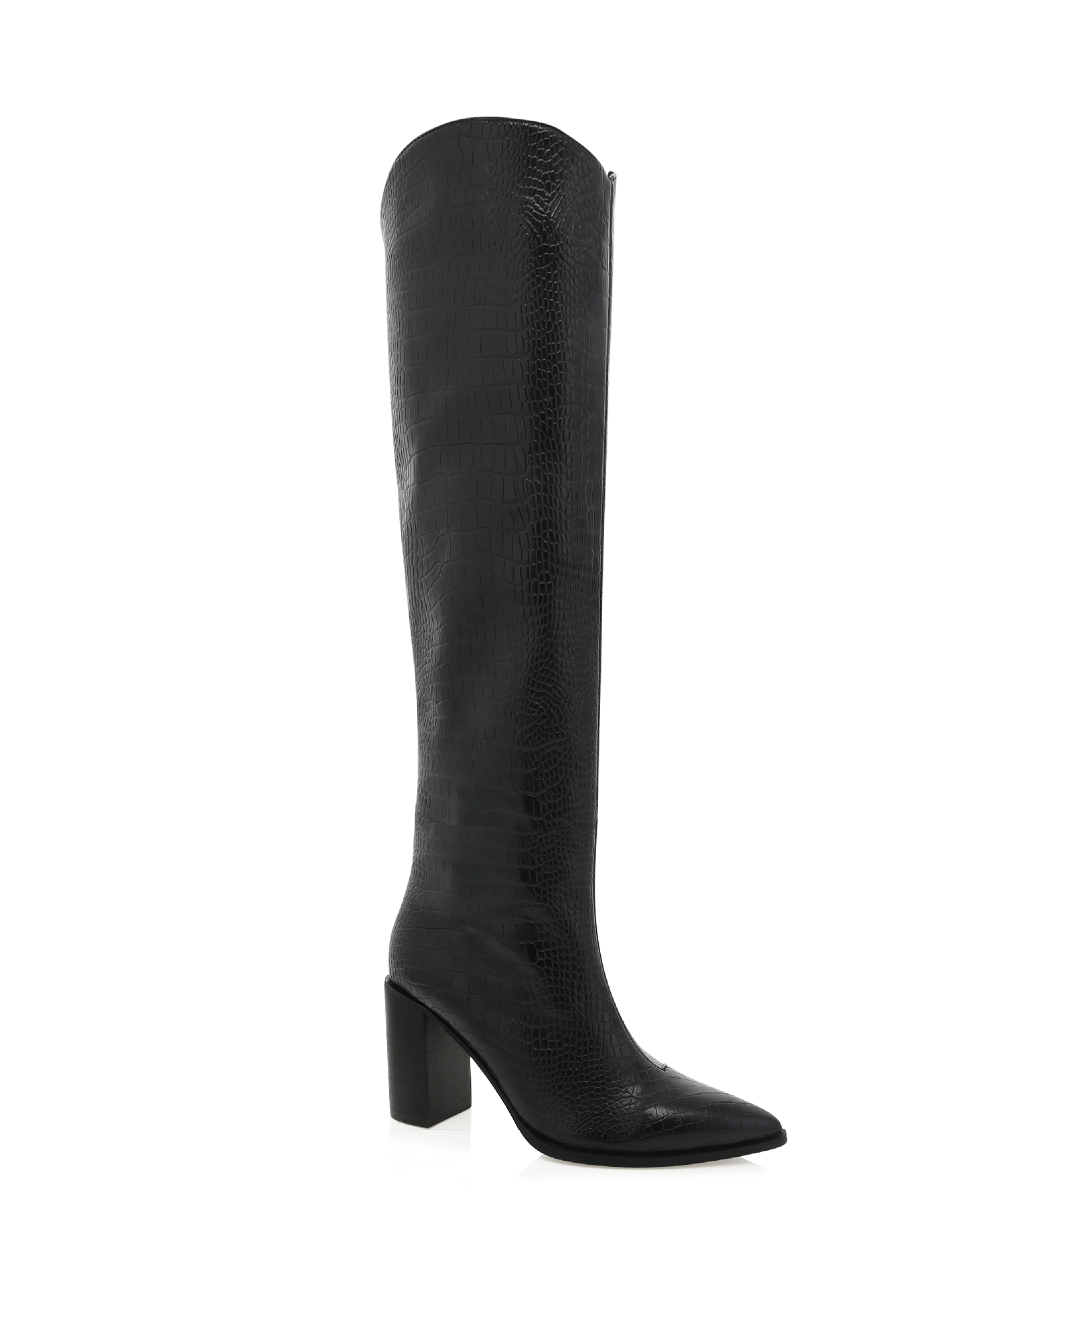 GABRIEL - BLACK CROC-BLACK-Boots-Billini-BILLINI USA